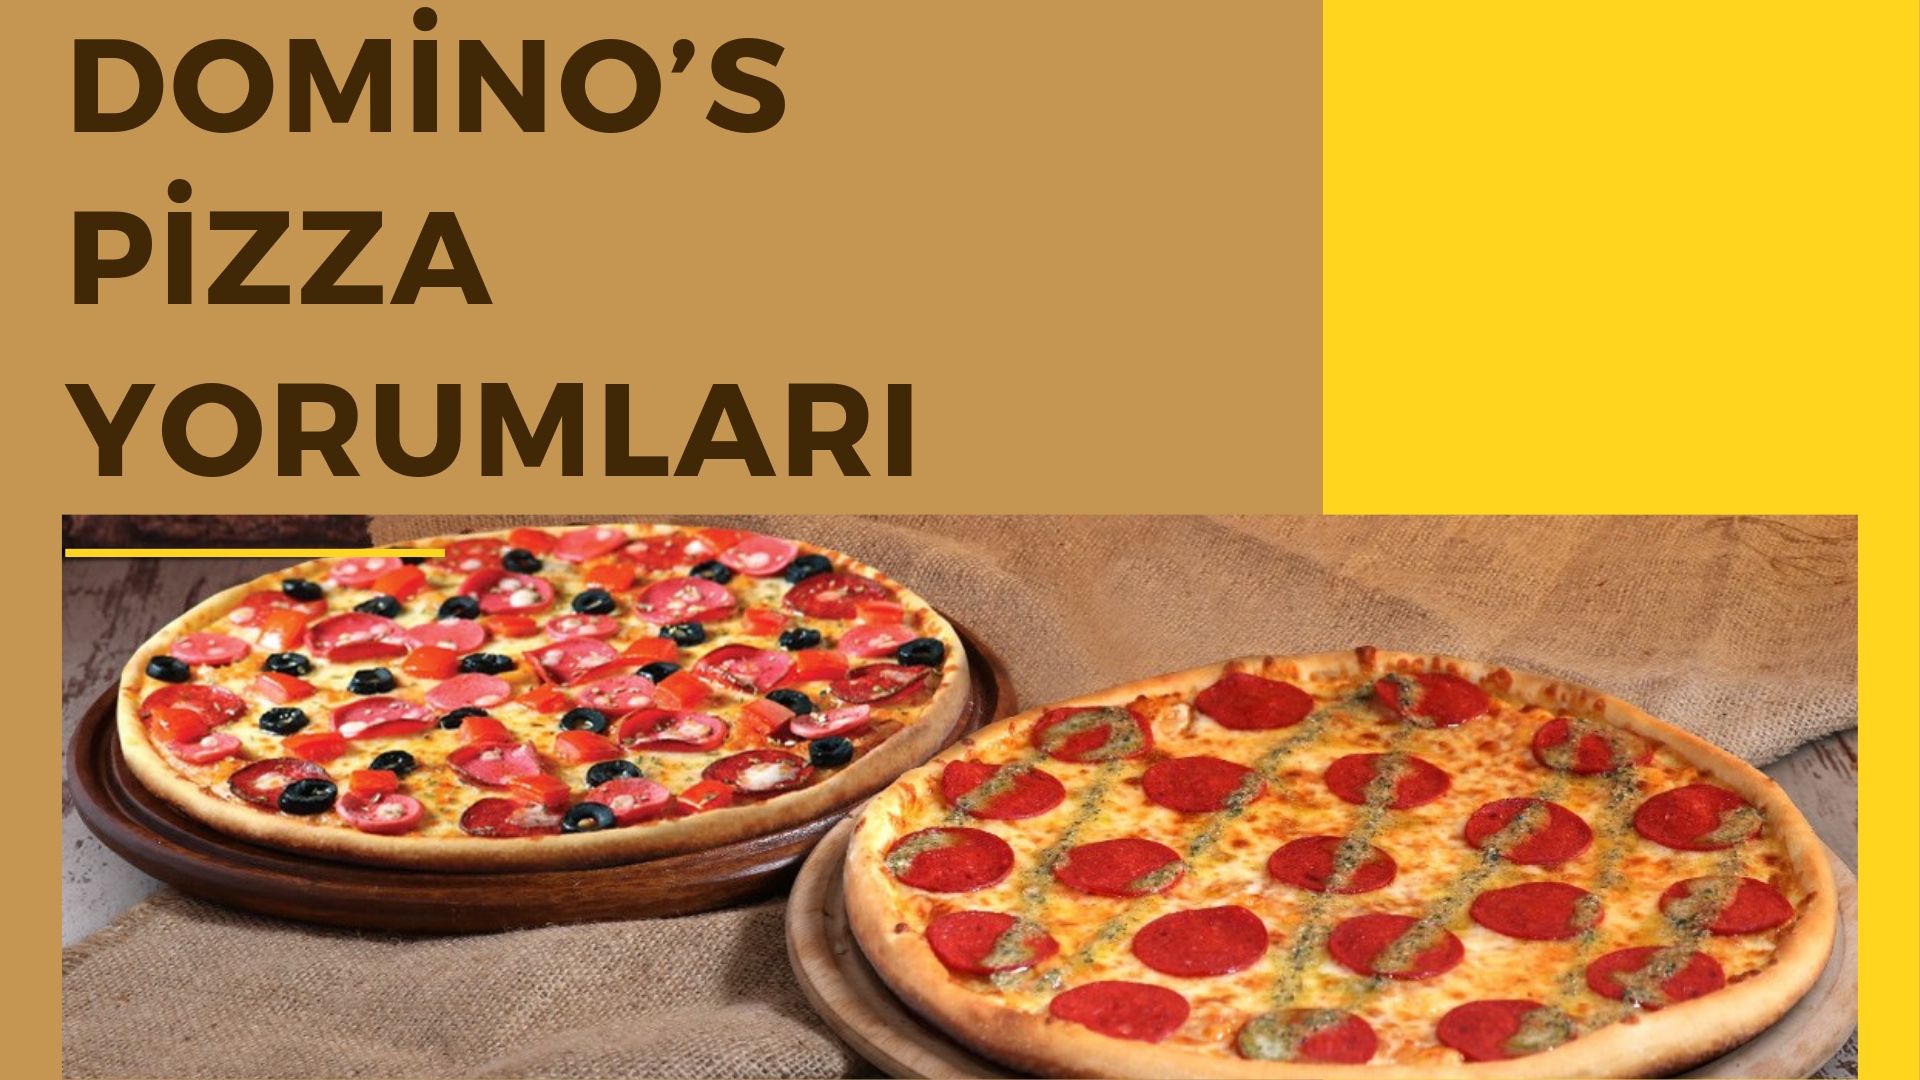 Domino’s Pizza Yorumları | 30 Dakikada Lezzet Kapında Mı?